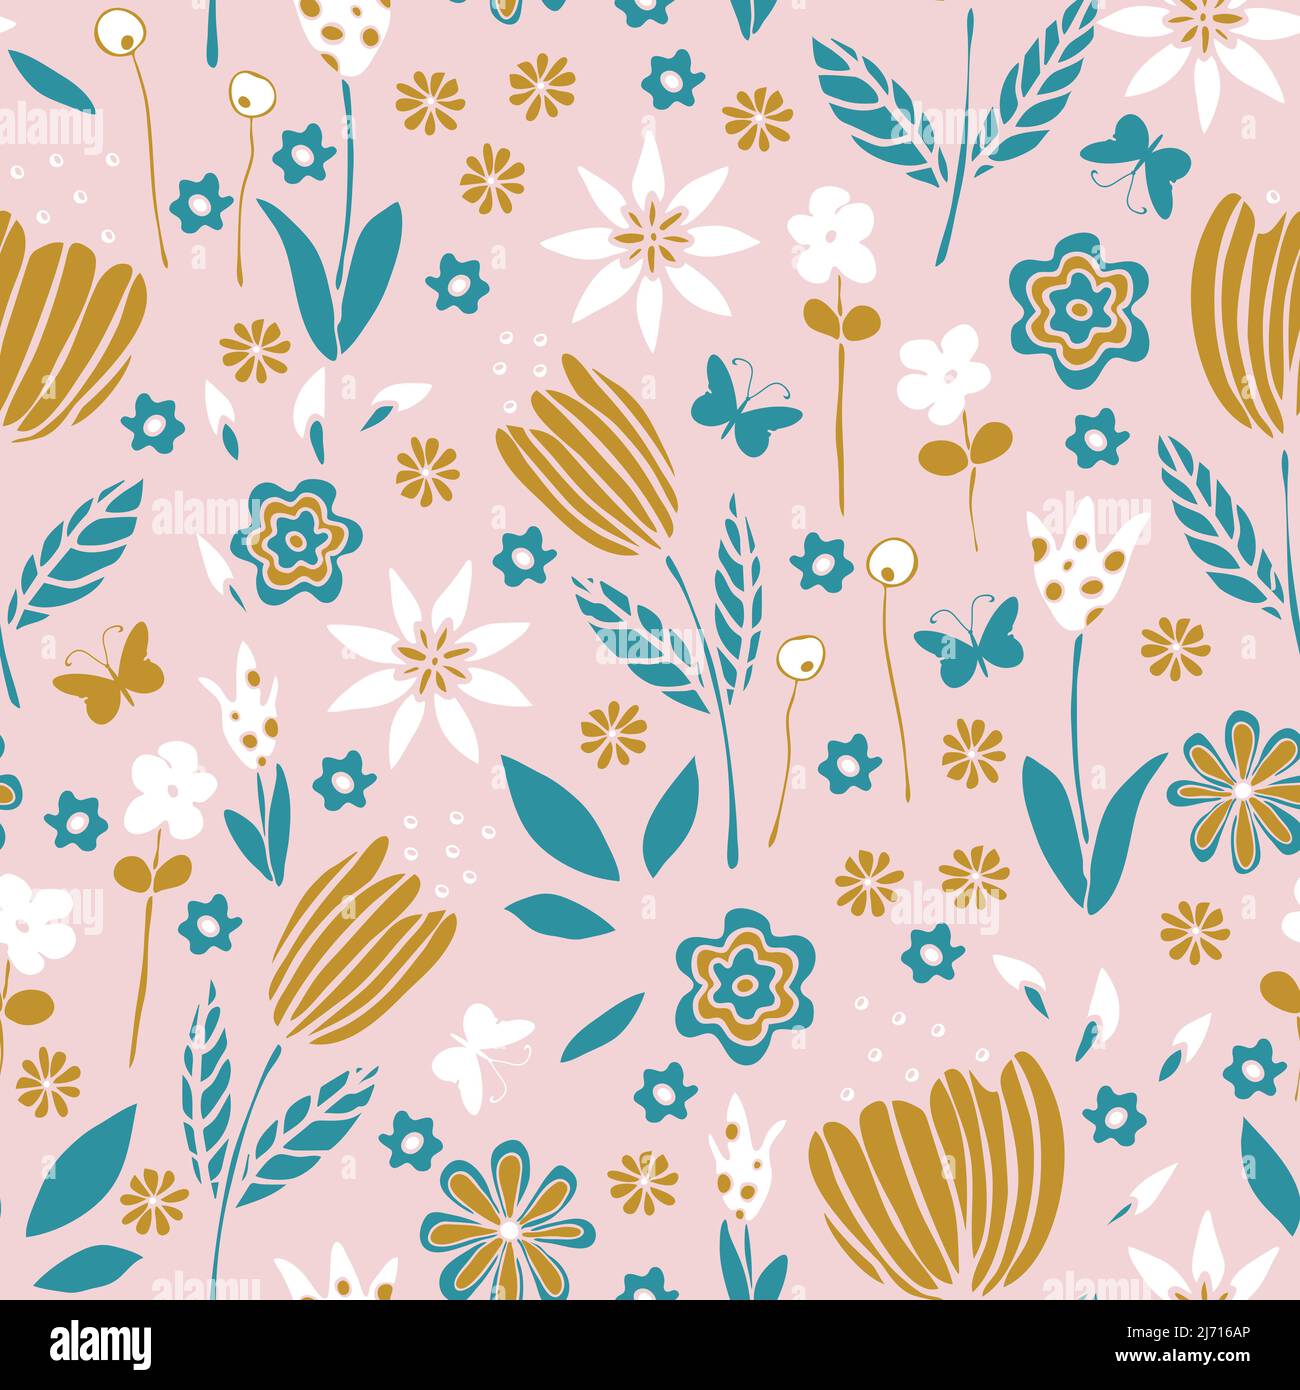 Nahtloses Vektor-Muster mit romantischem Blumengarten auf rosa Hintergrund. Einfache niedliche florale Tapete Design. Dekorative Girly Traum Mode Textil. Stock Vektor